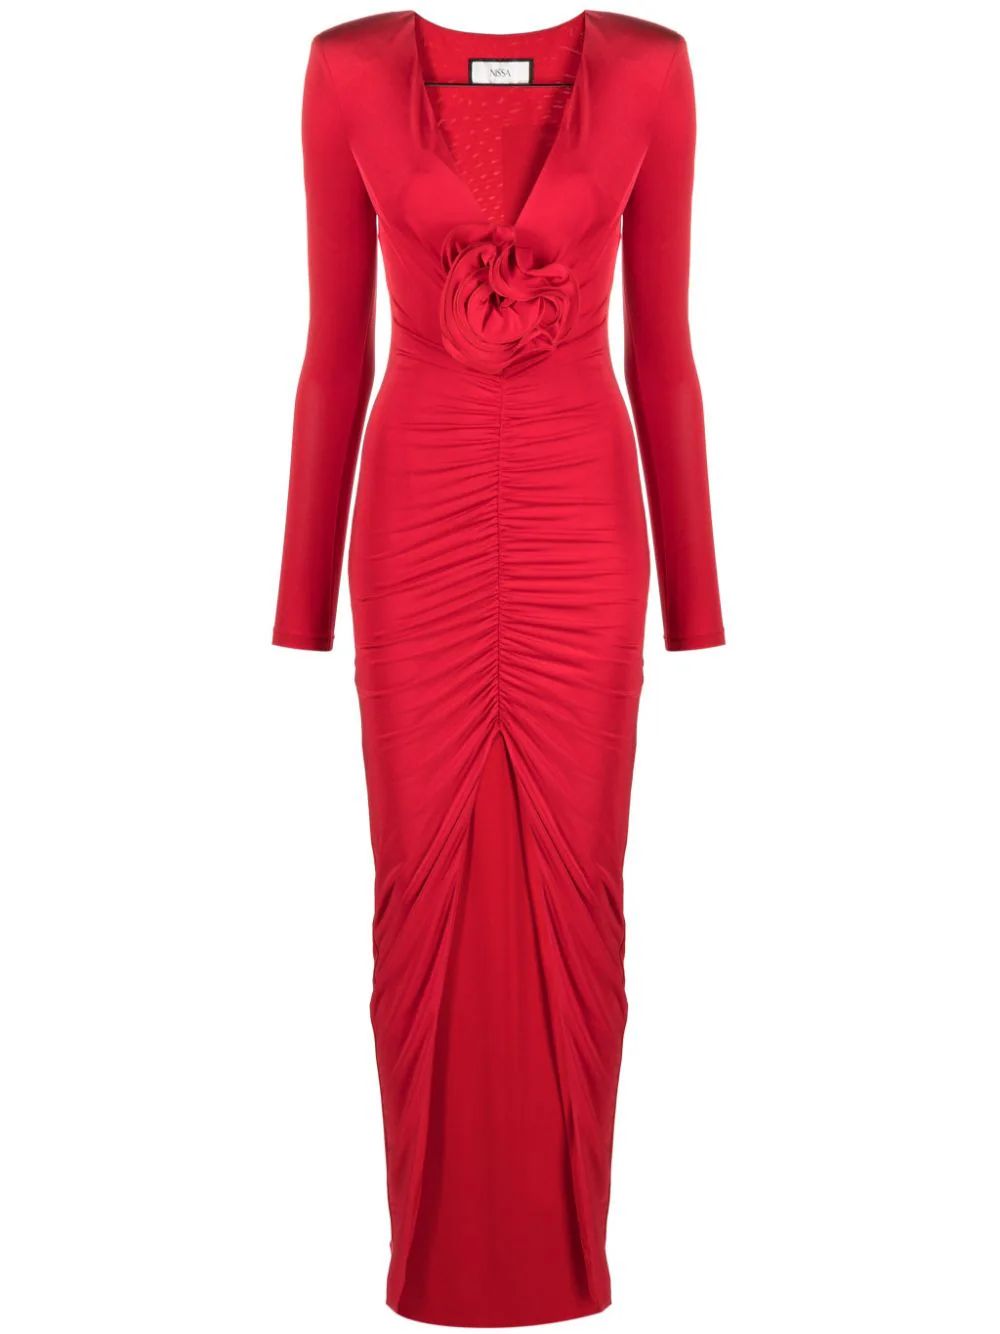 Η JLo φόρεσε κόκκινο, εορταστικό χρώμα και μας εμπνέει να το φορέσουμε στις γιορτές